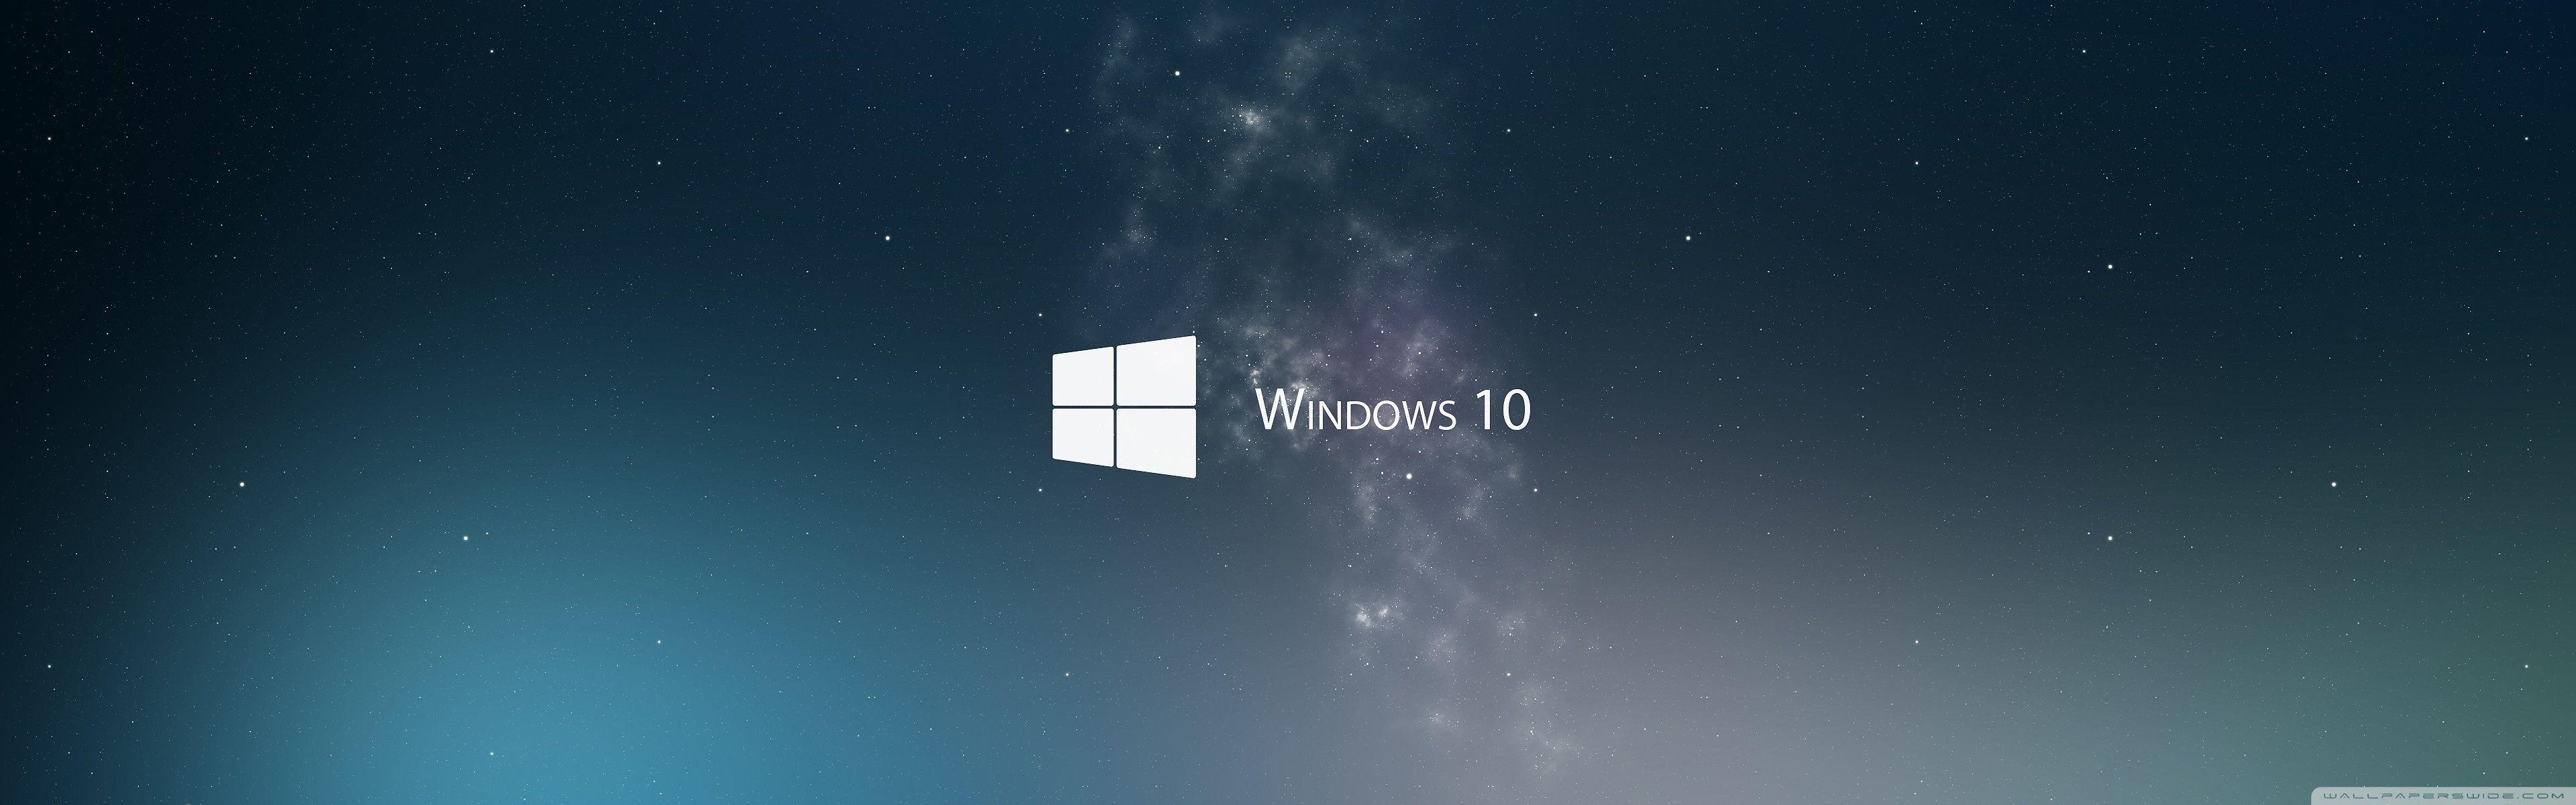 Bạn đang tìm kiếm hình nền phù hợp với màn hình đôi của bạn? Đừng bỏ qua hình nền Windows 10 cho màn hình đôi miễn phí mà chúng tôi giới thiệu. Hình nền này là sự kết hợp hoàn hảo giữa độ sắc nét và tinh tế, đem lại cảm giác tươi mới mỗi ngày.